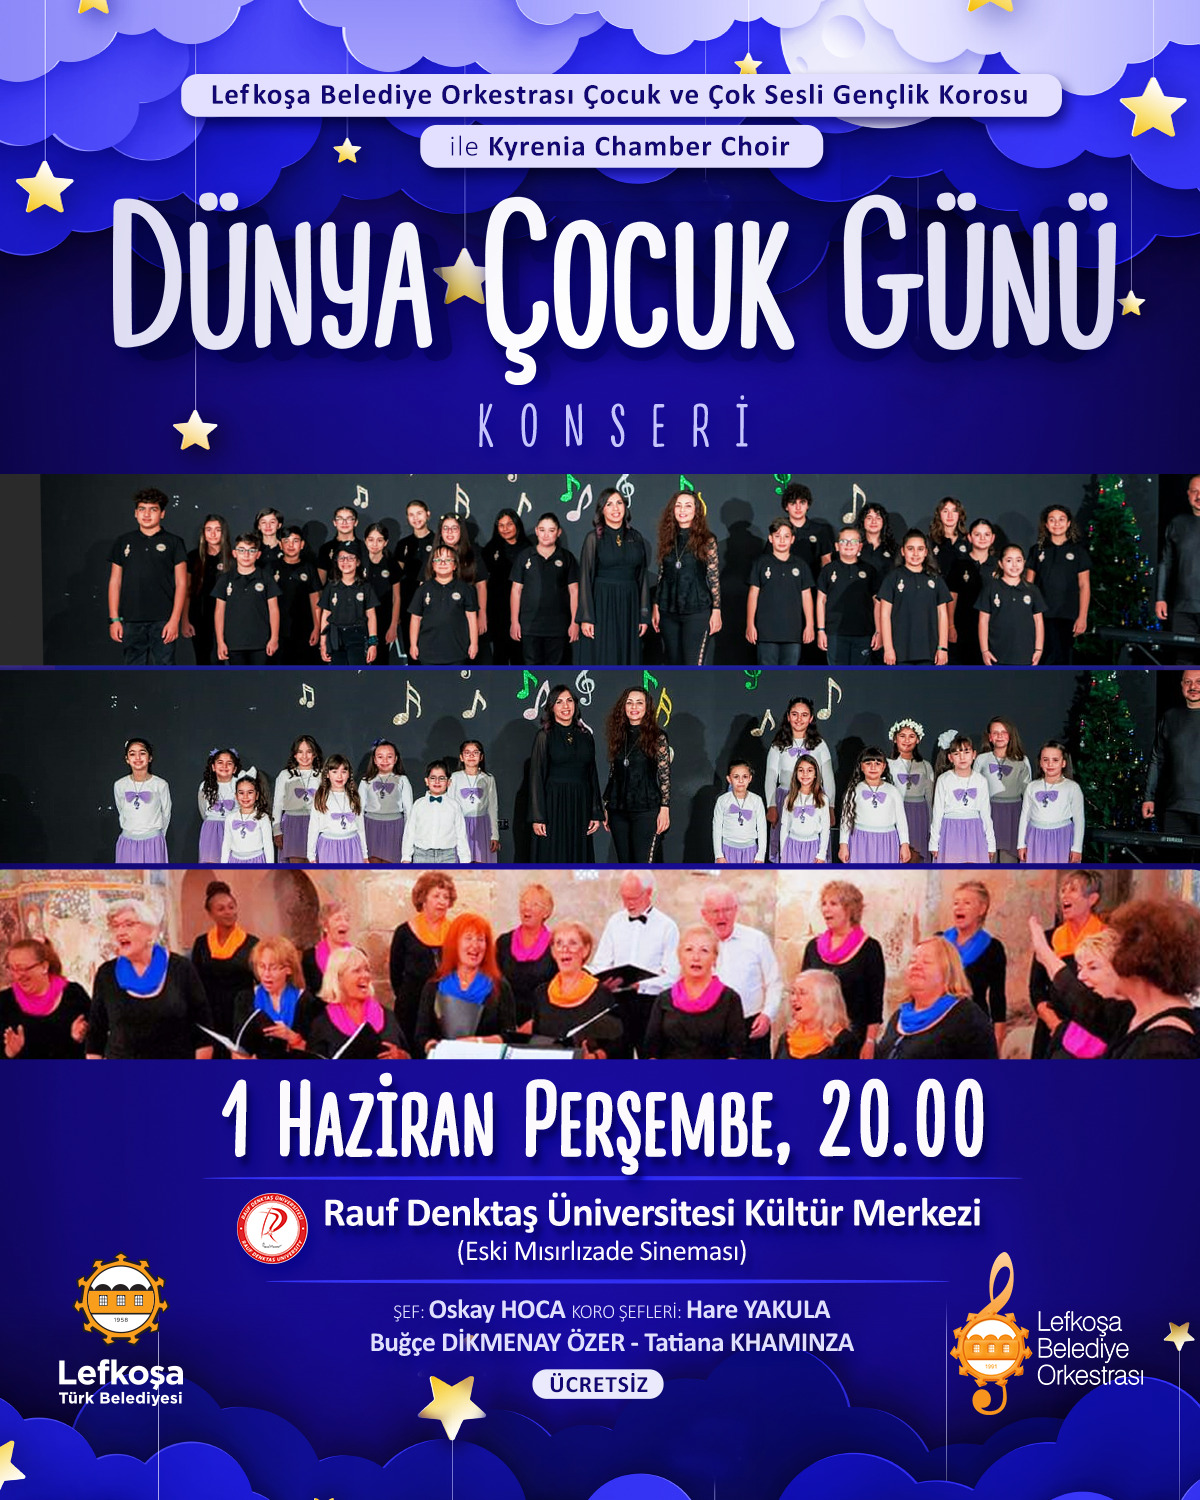 ozgur_gazete_kibris_lefkosa_turk_belediyesi_dunya_cocuk_gunu